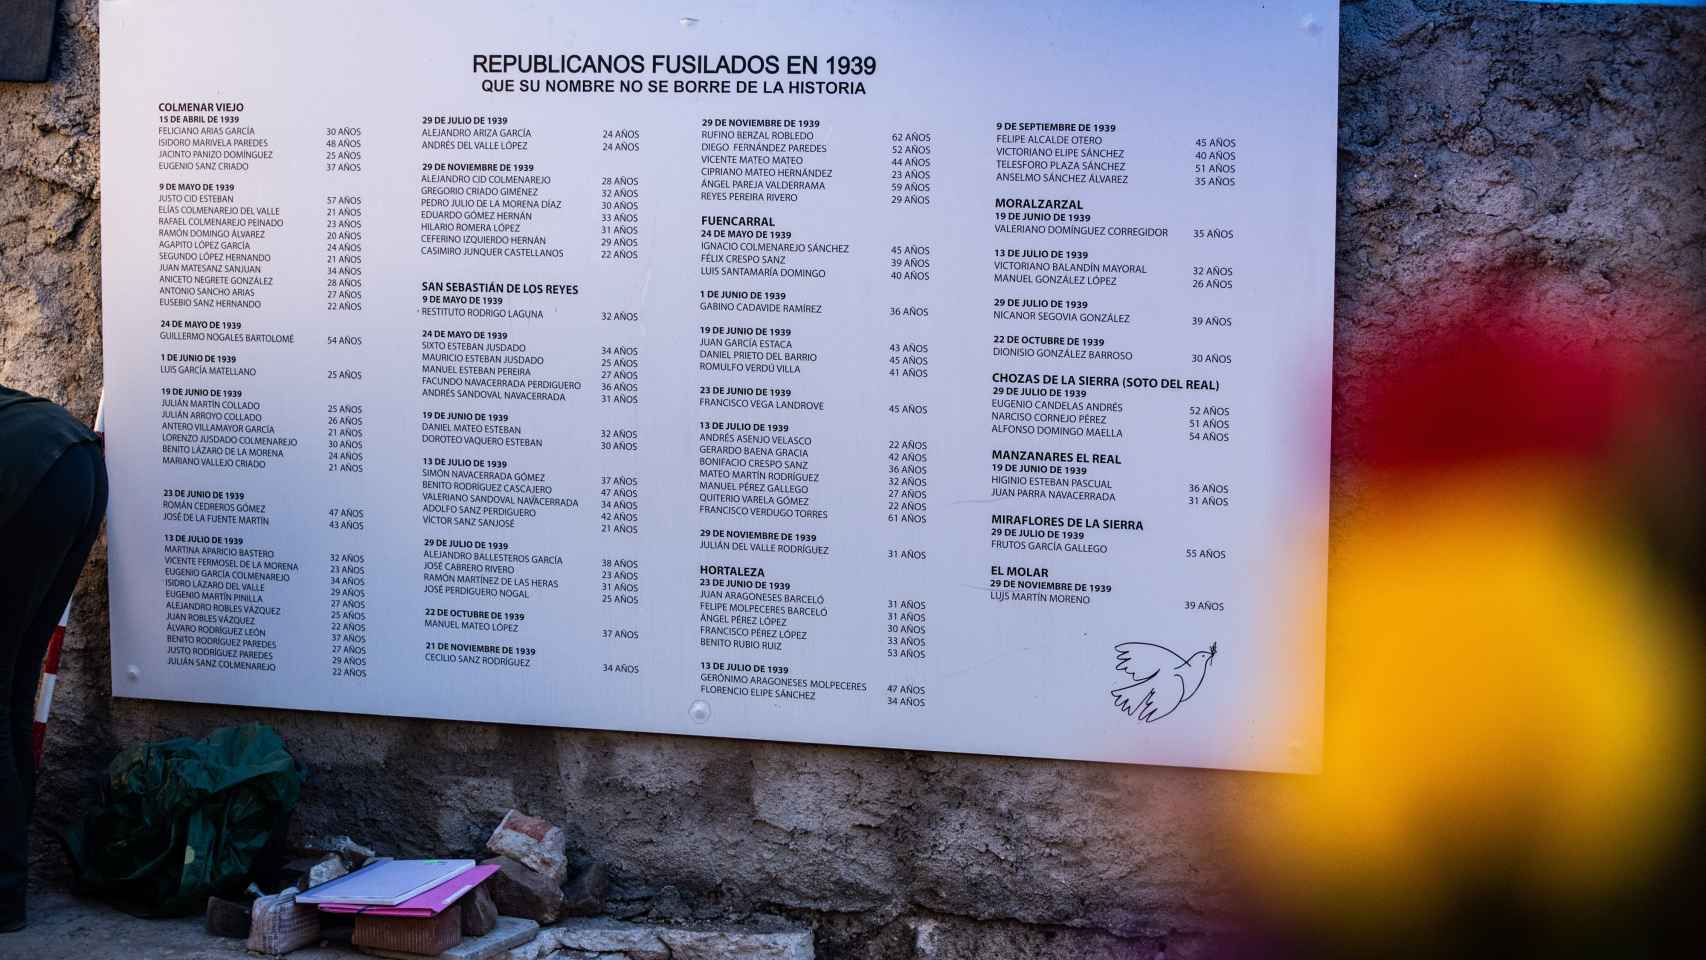 Placa conmemorativa a los republicanos fusilados en 1939 en la sierra norte de Madrid. Se puede leer los nombres y apellidos así como fecha de muerte de todos los represaliados. Junto a la placa se daban los trabajos de exhumación de la fosa civil en 2022.